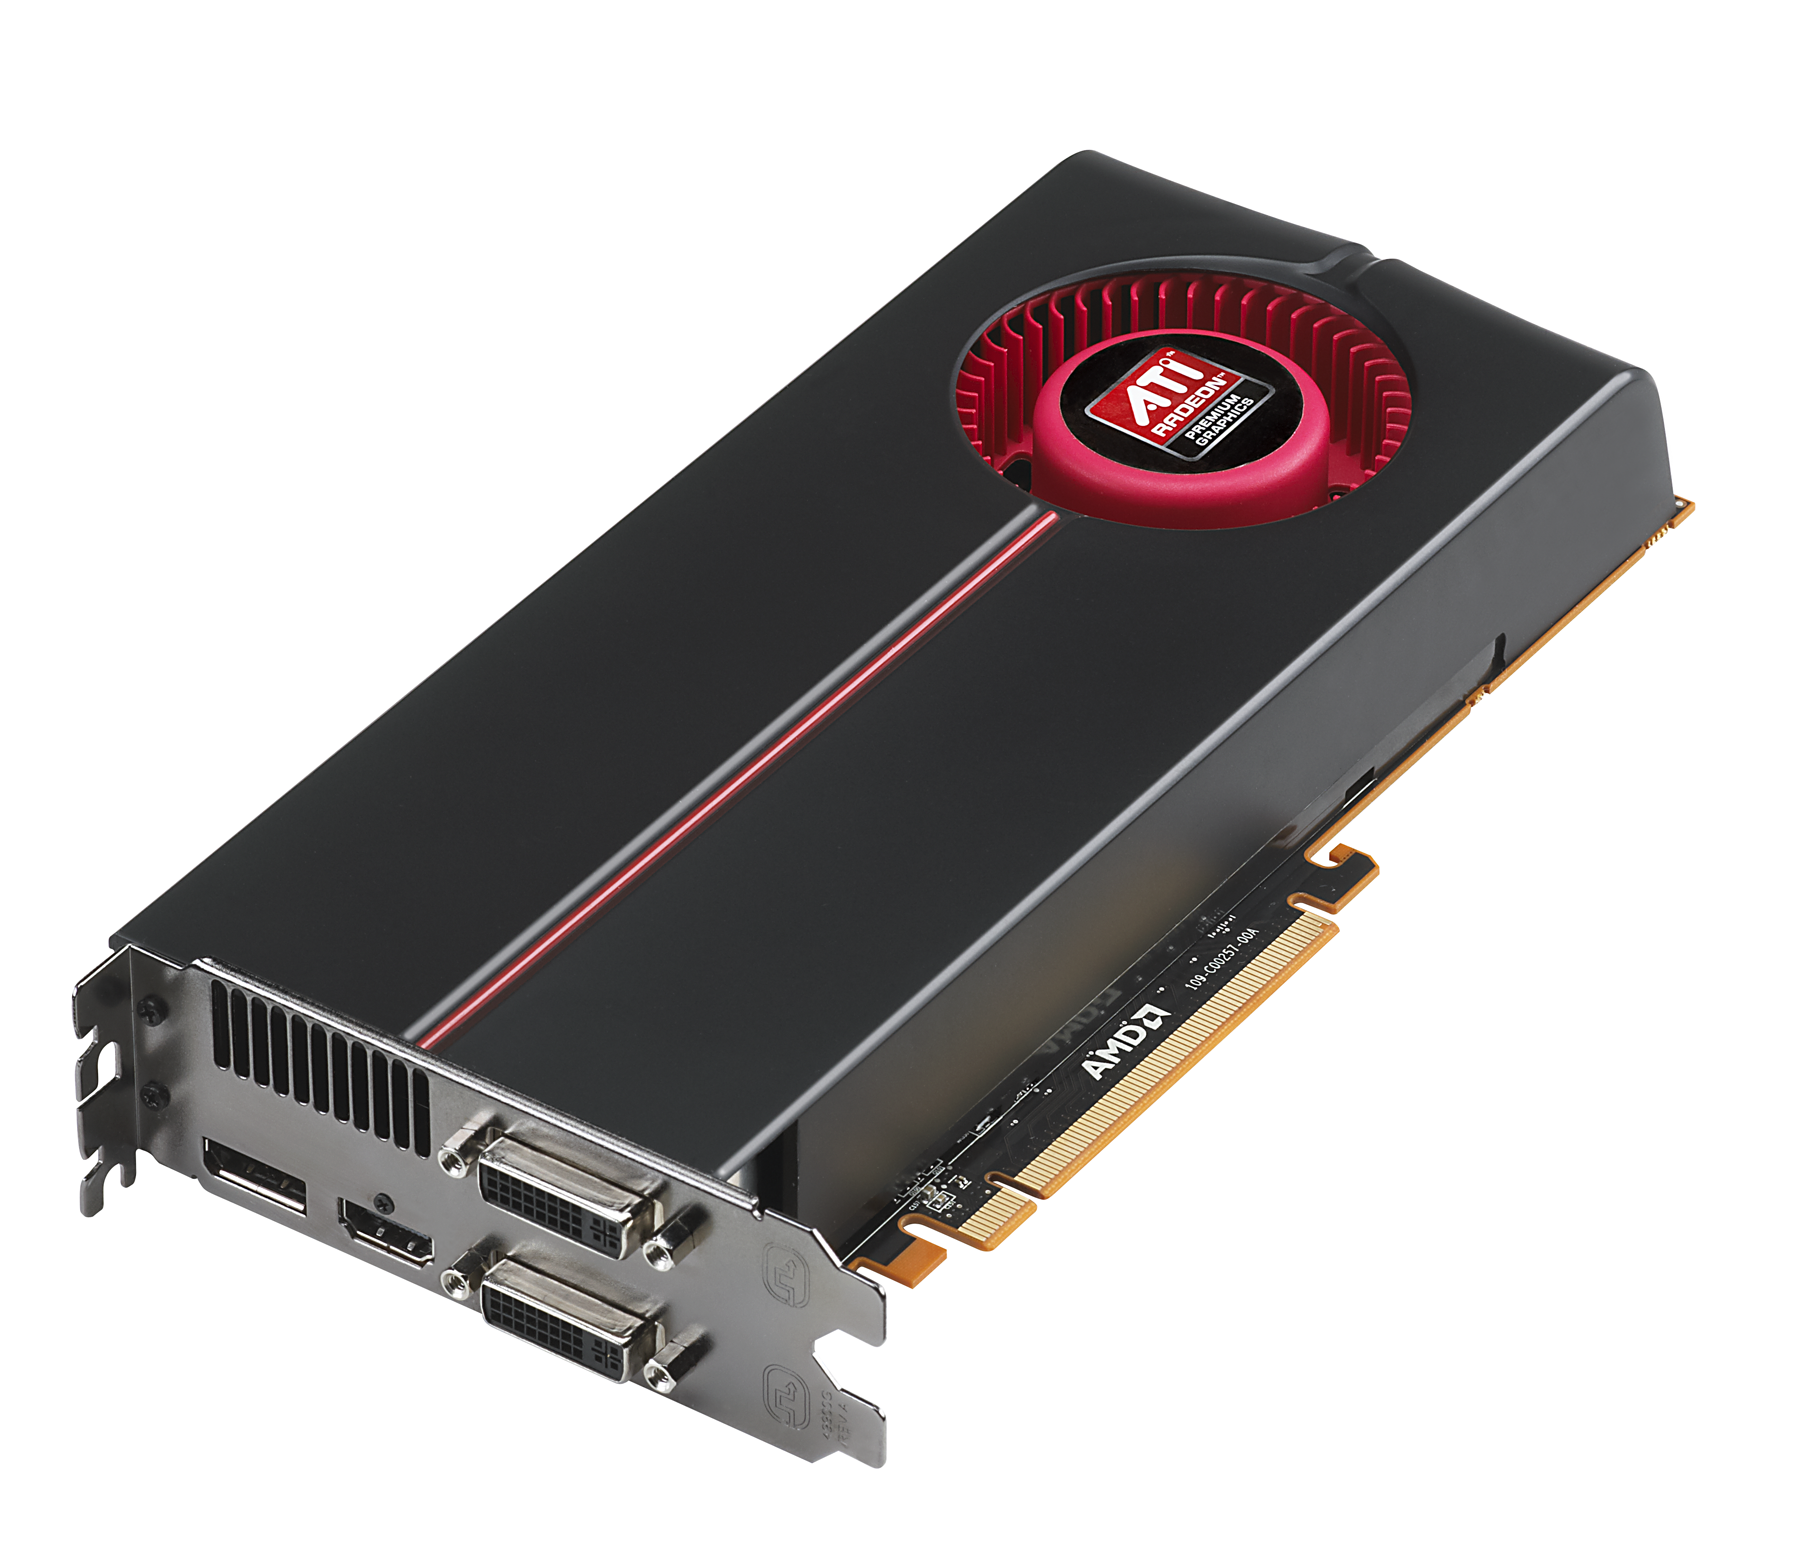 Immagine pubblicata in relazione al seguente contenuto: AMD annuncia ufficialmente le ATI Radeon HD 5870 e HD 5850 | Nome immagine: news11502_1.png